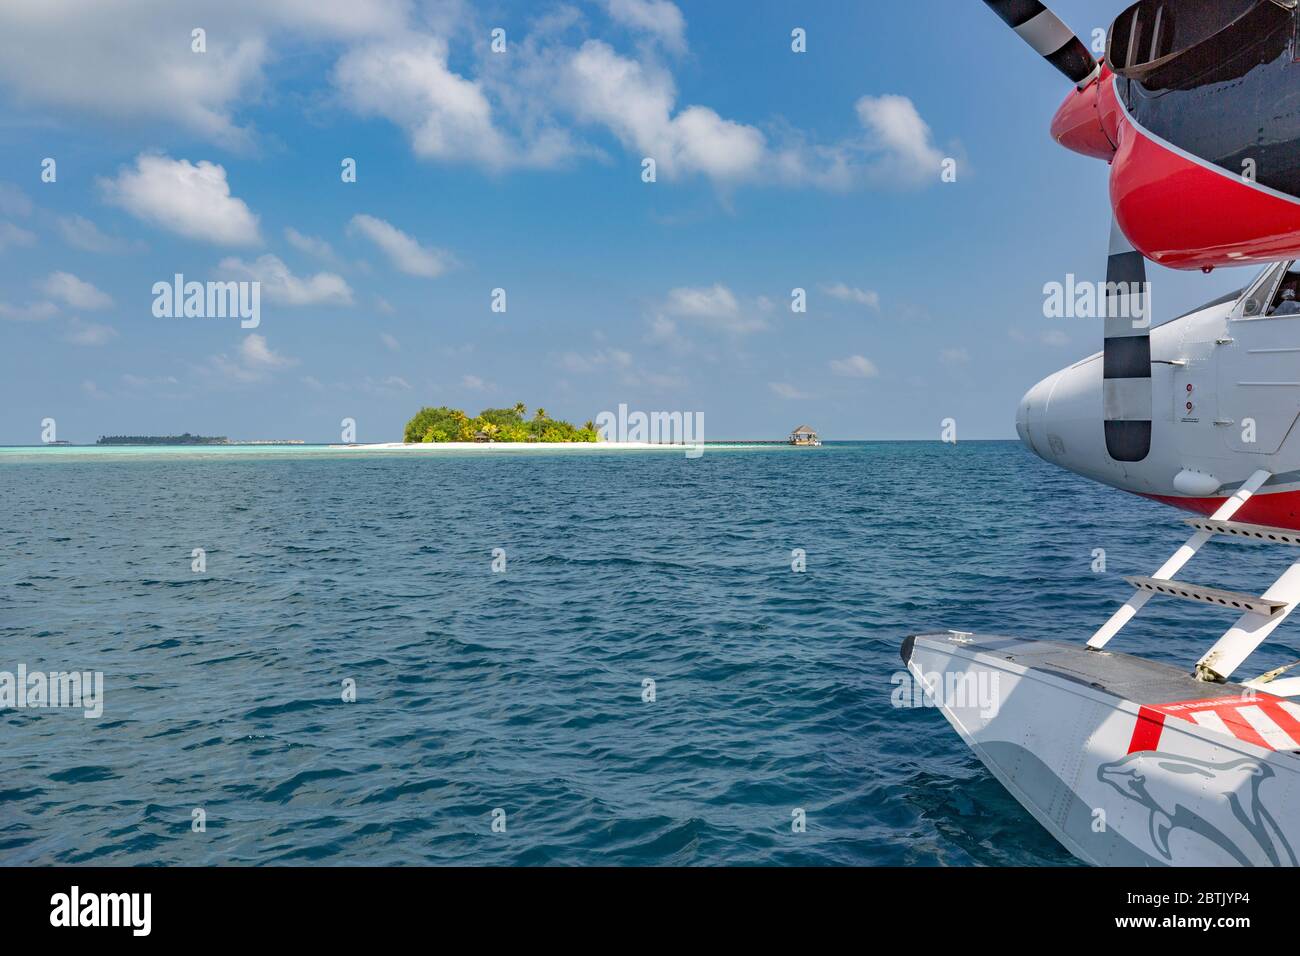 Exotische Szene mit Wasserflugzeug auf den Malediven. Erstaunliche Reise Hintergrund in exotischen Ziel. Urlaub oder Urlaub auf den Malediven Konzept Hintergrund Stockfoto